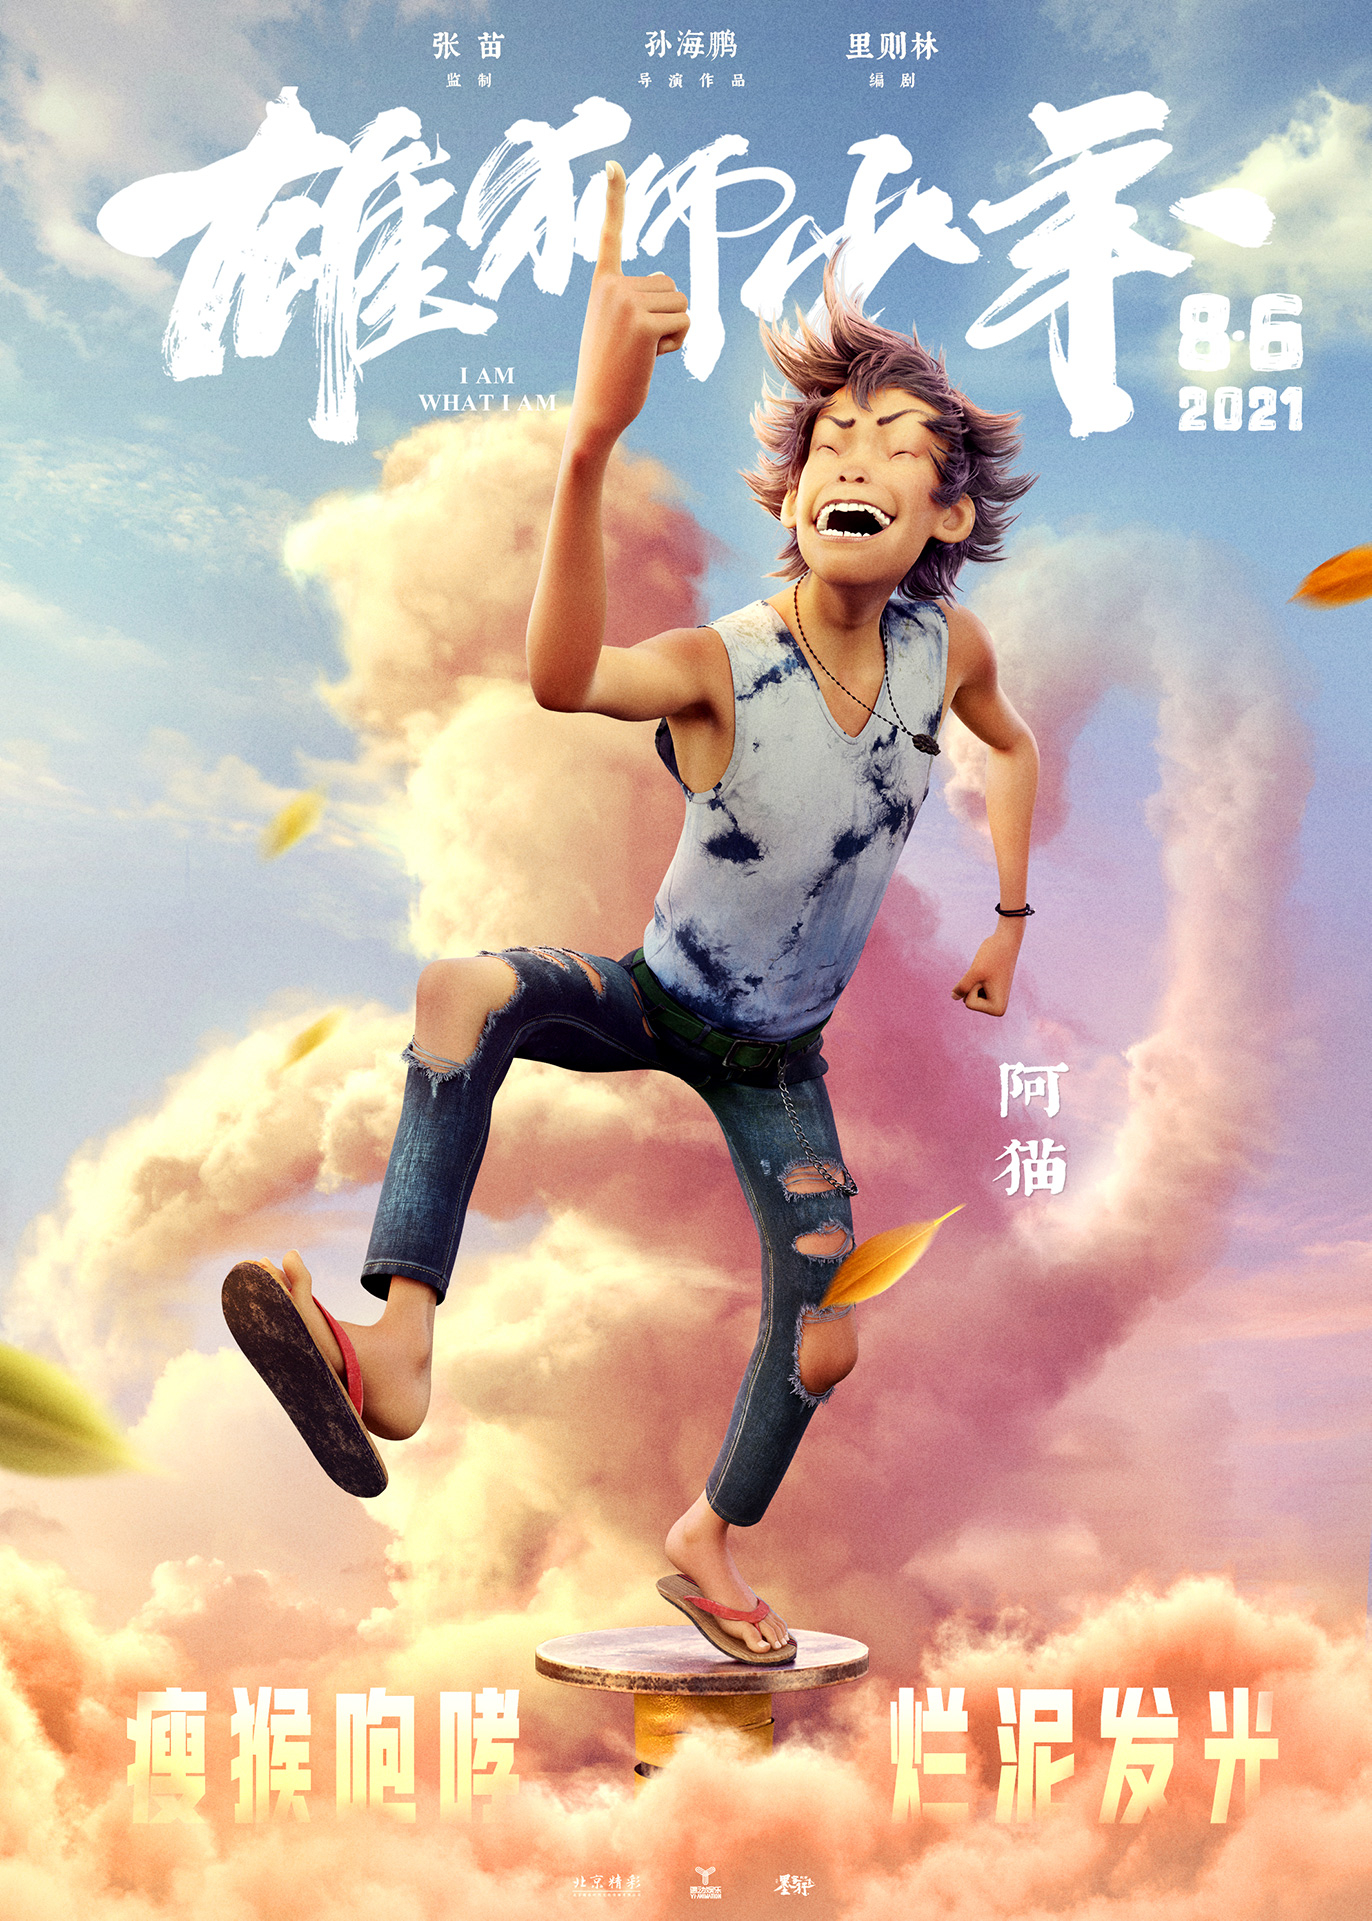 《雄狮少年》曝光“天生我材必有用”版人物海报 将于8月6日全国上映